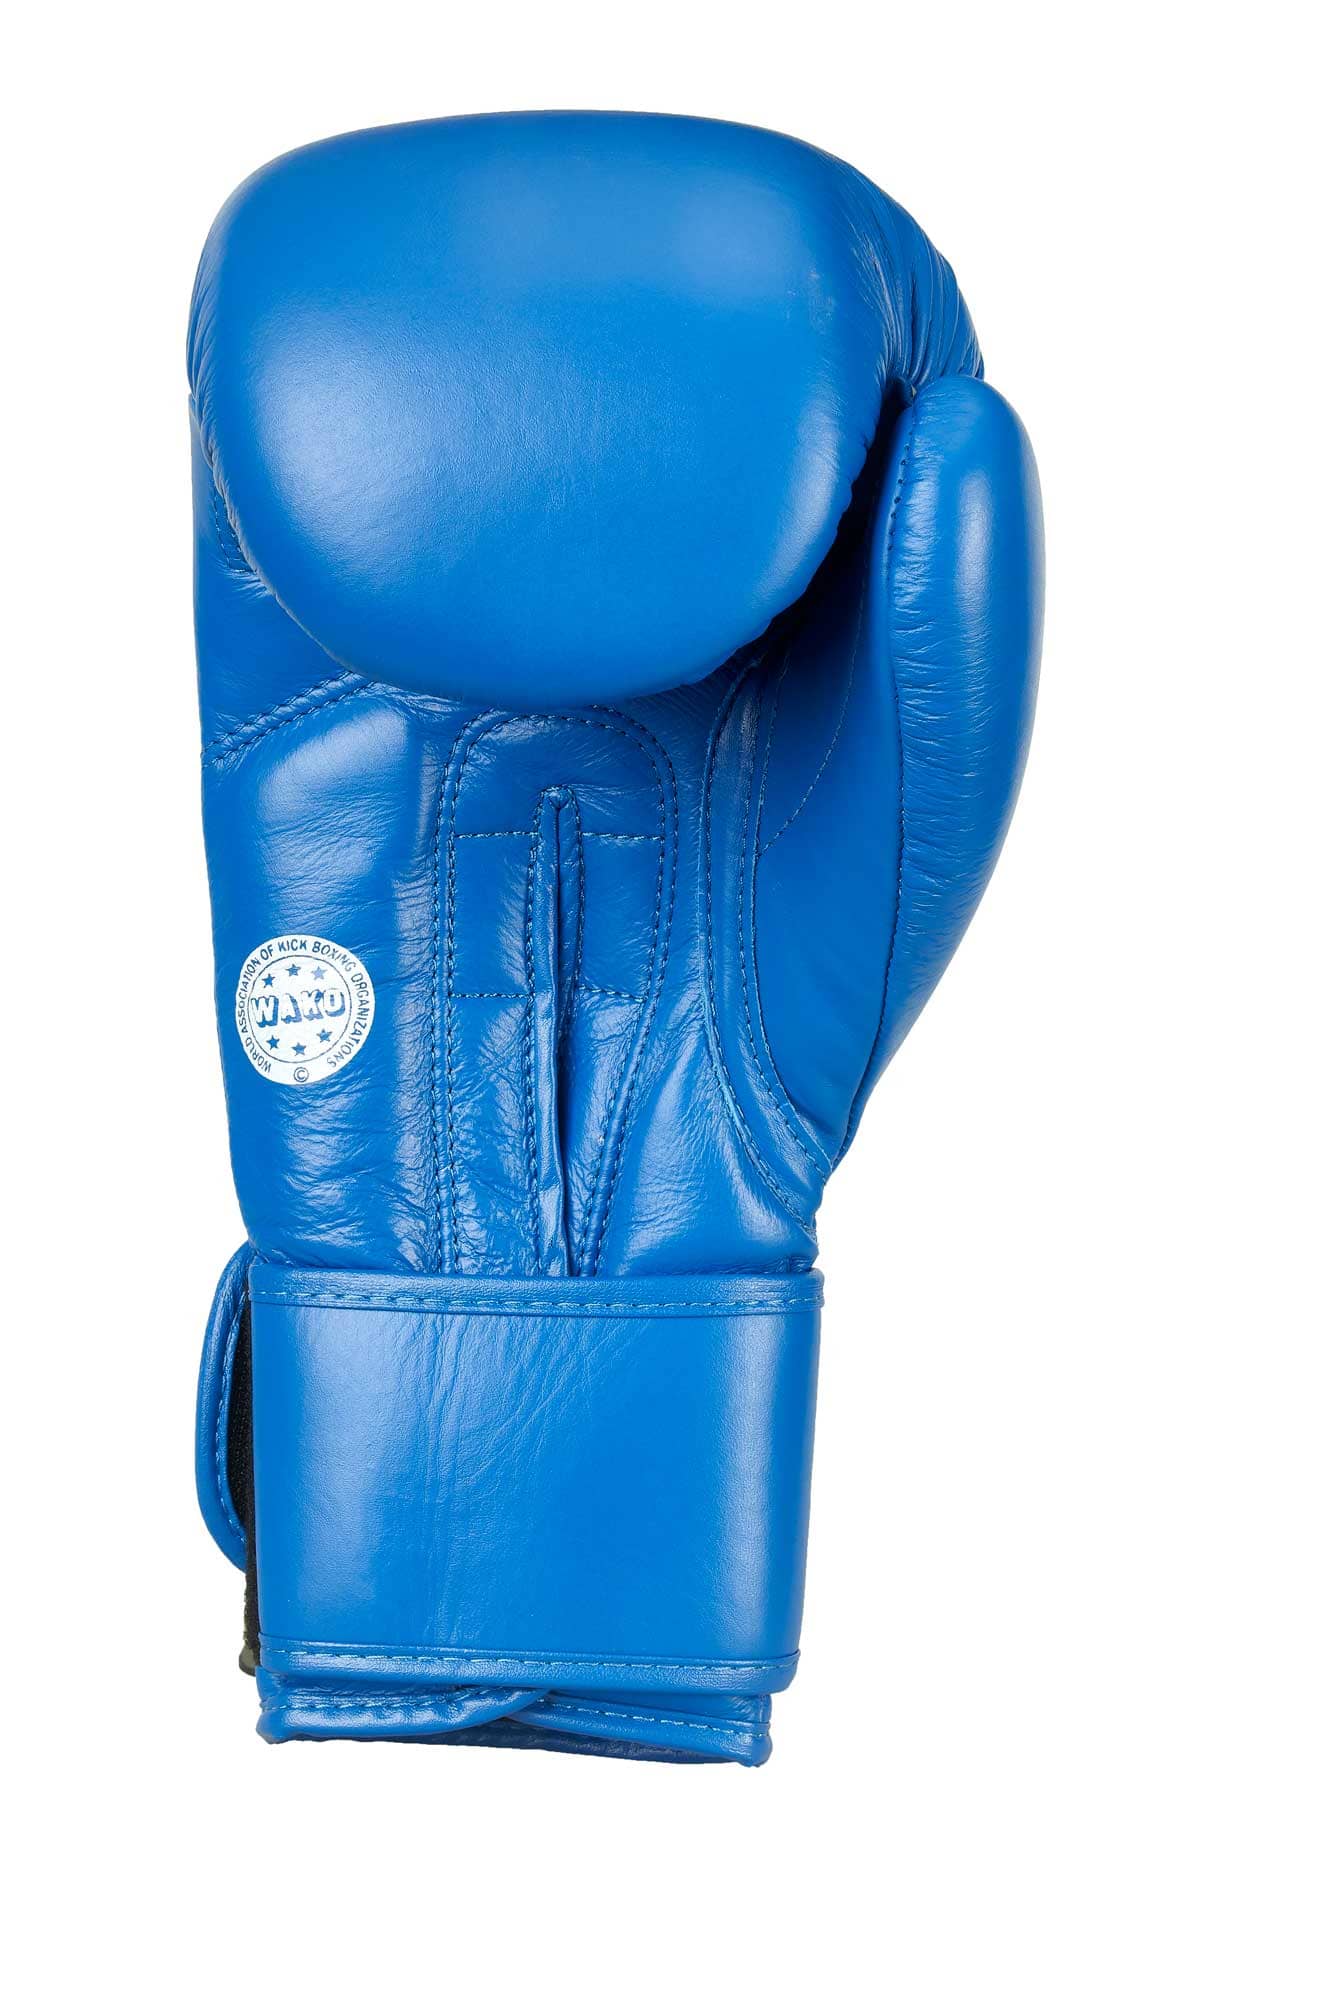 Adidas Boxhandschuhe WAKO Blau Leder 10oz Online kaufen ✓ | EMPAROR